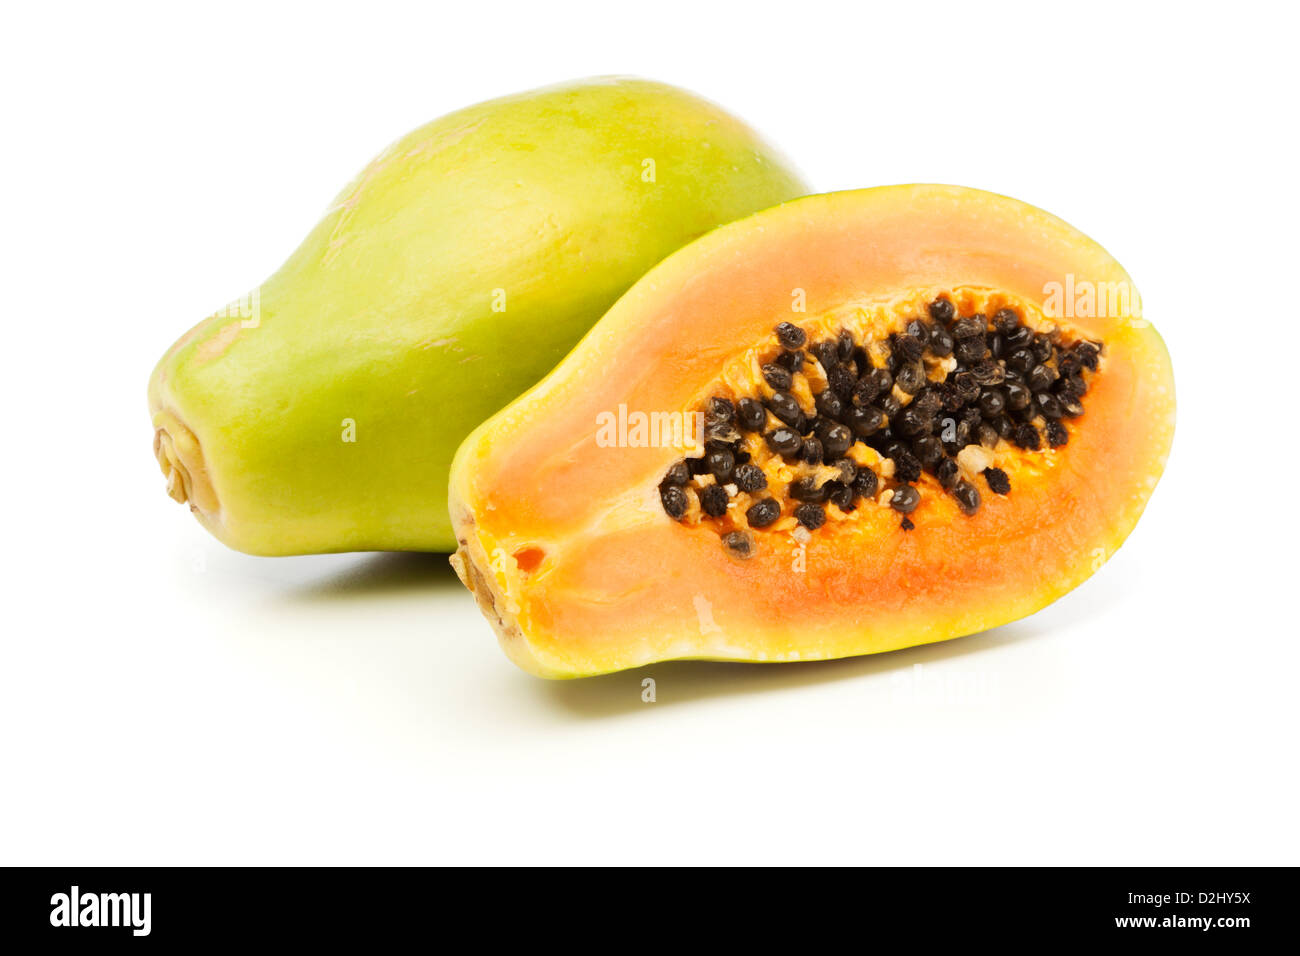 Whole and half Papaya fruits on white background Stock Photo